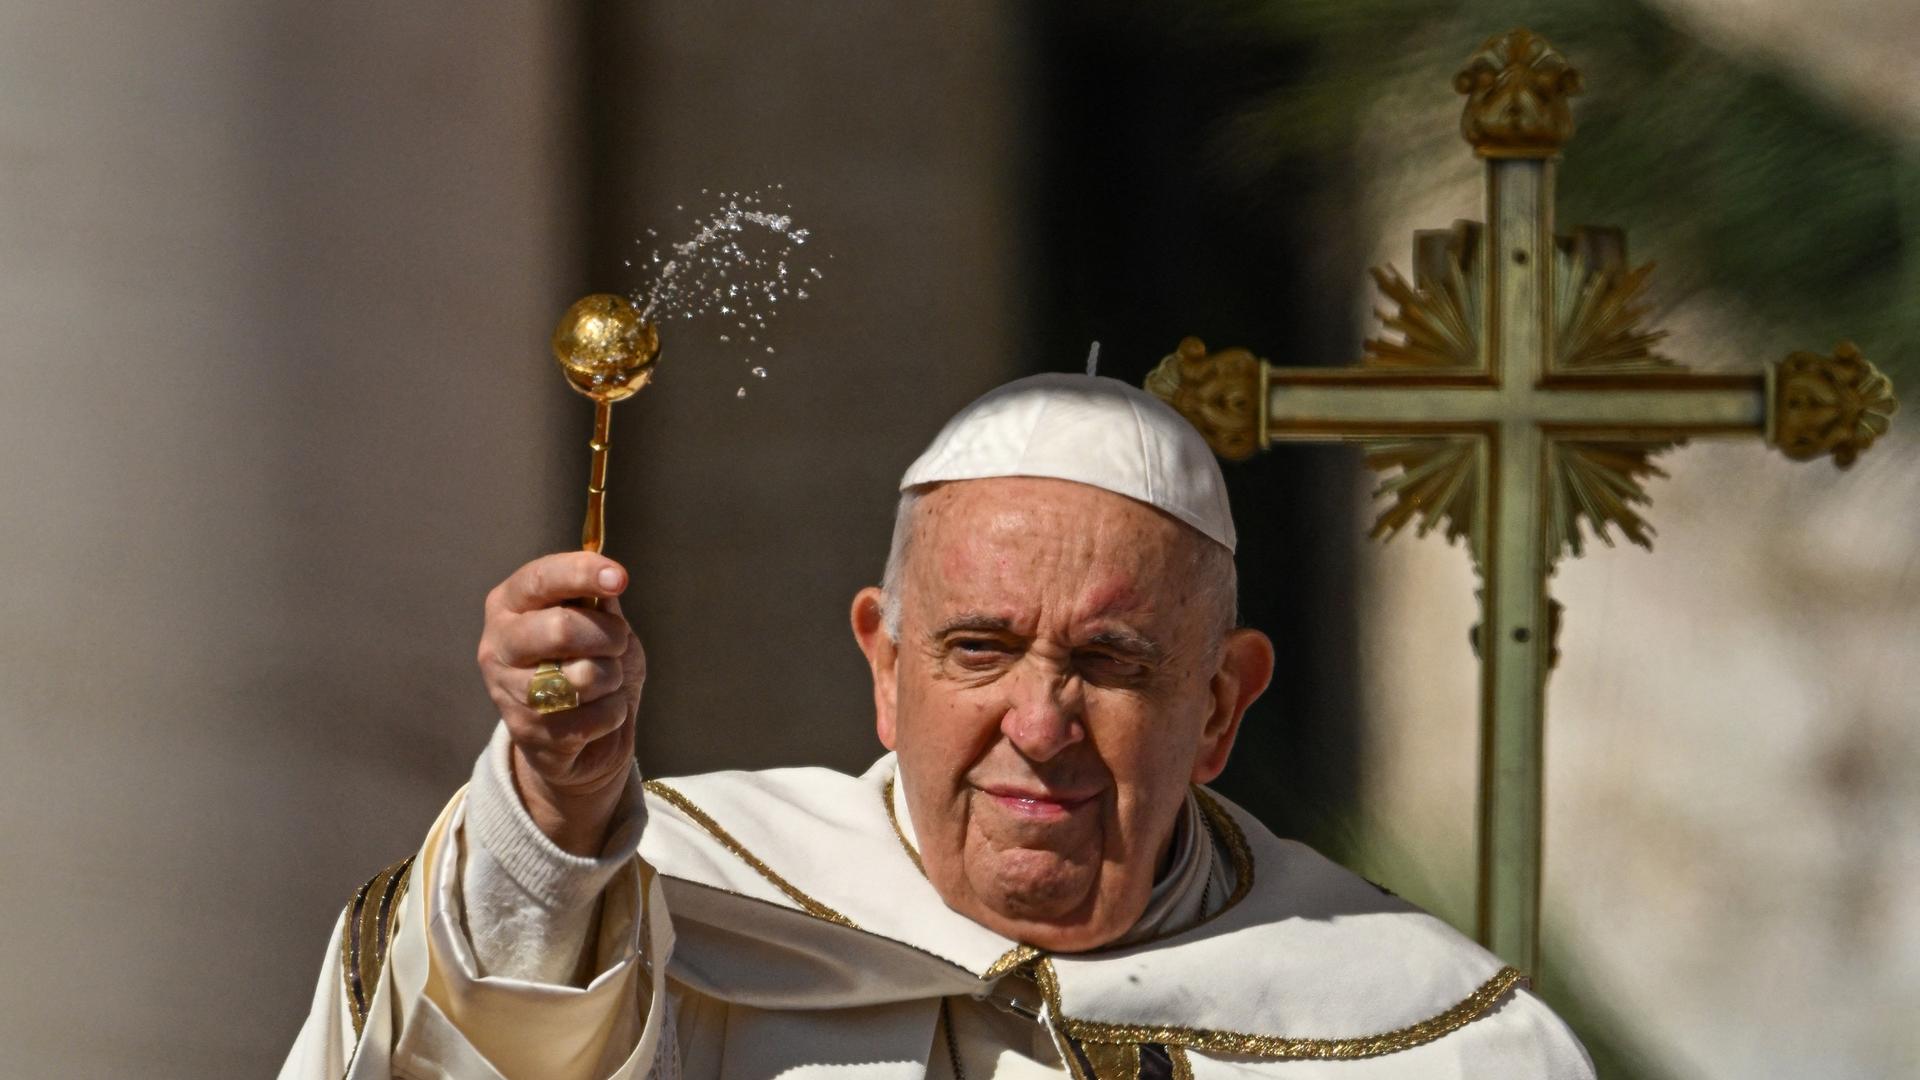 Papst Franziskus sprengt Heiliges Wasser während des Ostergottesdienstes. (Photo by Andreas SOLARO / AFP)